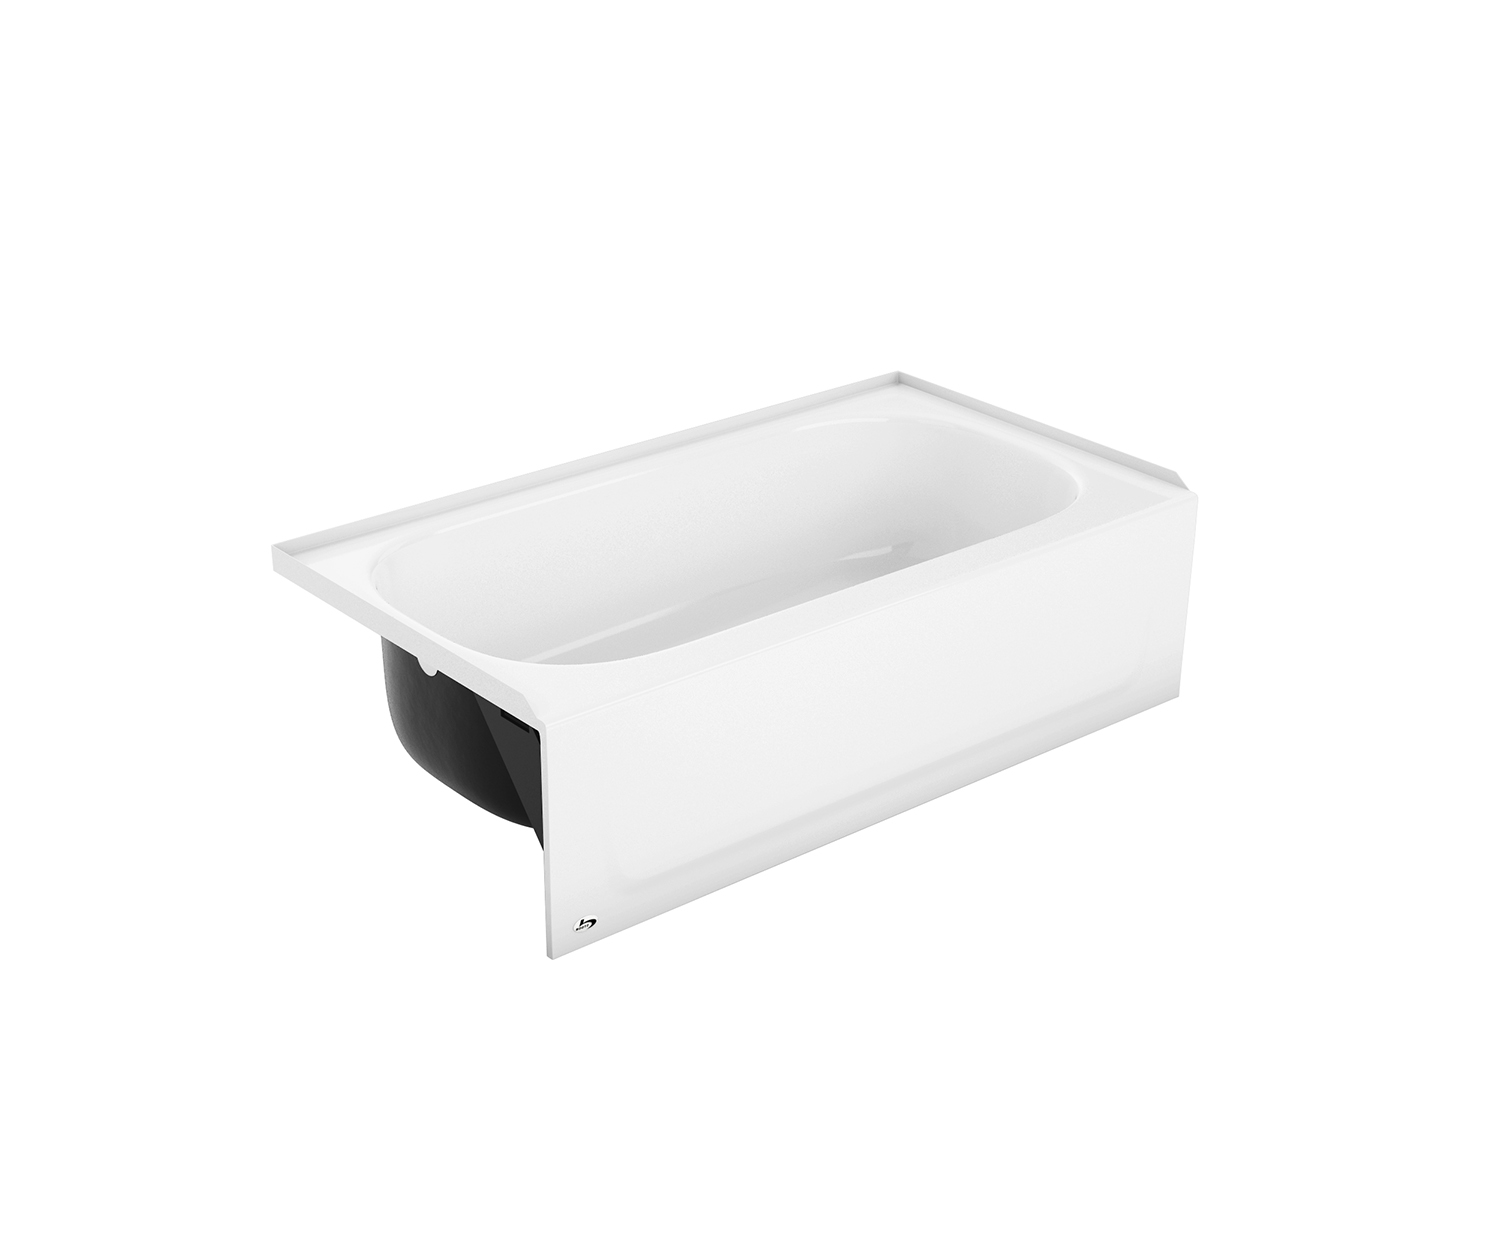 Kona 50x30x15-1/4" Bathtub in White w/Left Drain